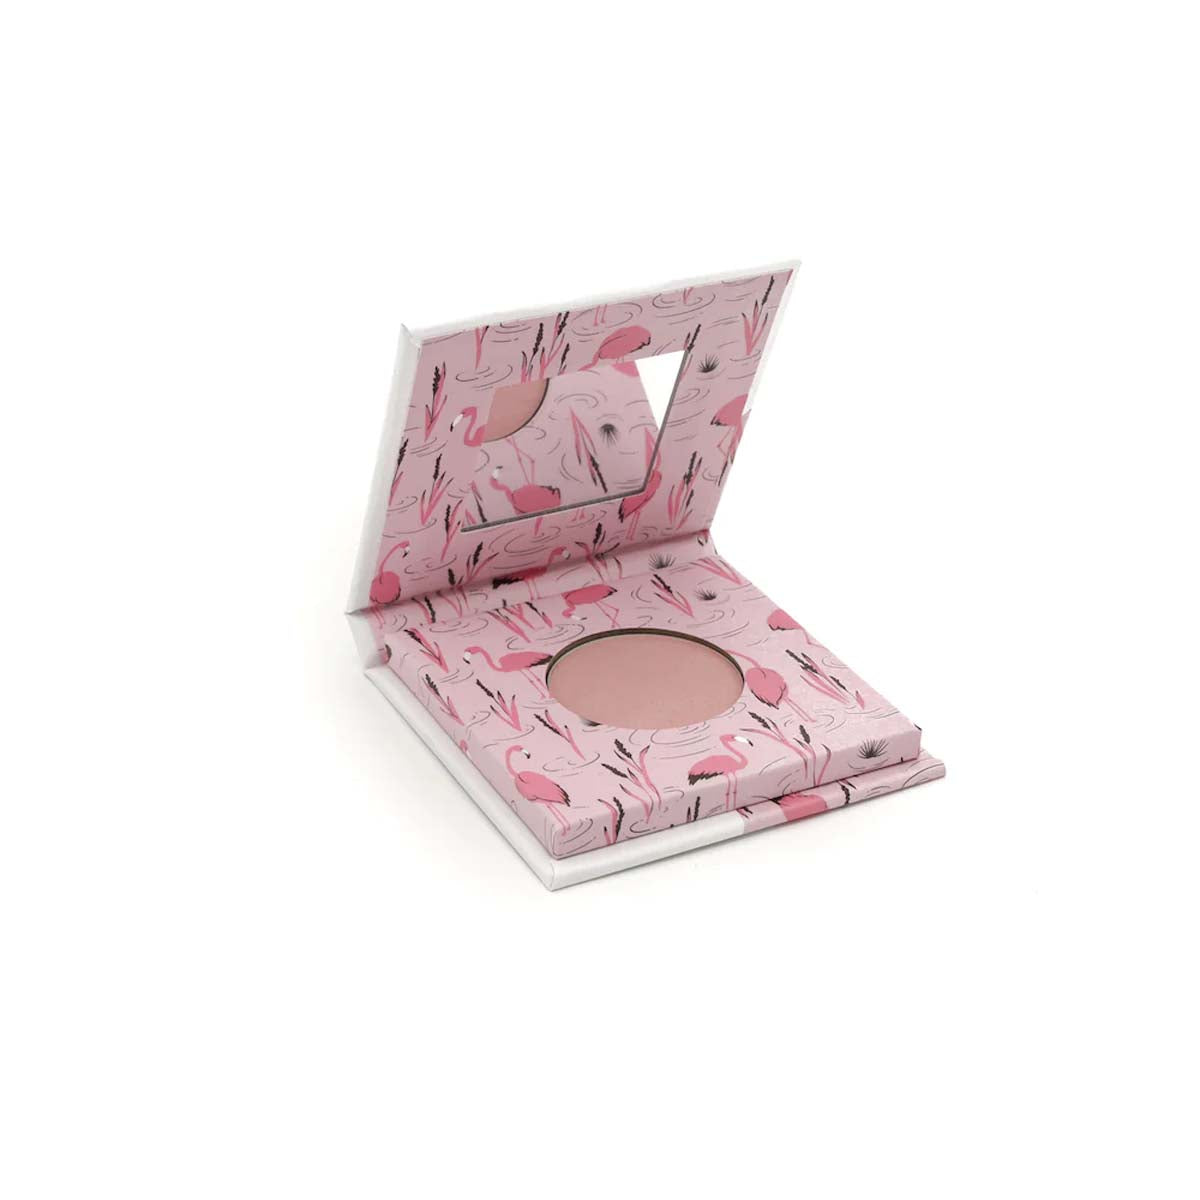 Veilig make-uppen kan met de vegan Mineral oogschaduw fabulous flamingo van het merk Toot! Verpakt in een vrolijk en luxe doosje, met handig spiegeltje en applicator. Ook in andere kleuren te koop. Mooie kindermake-up. VanZus